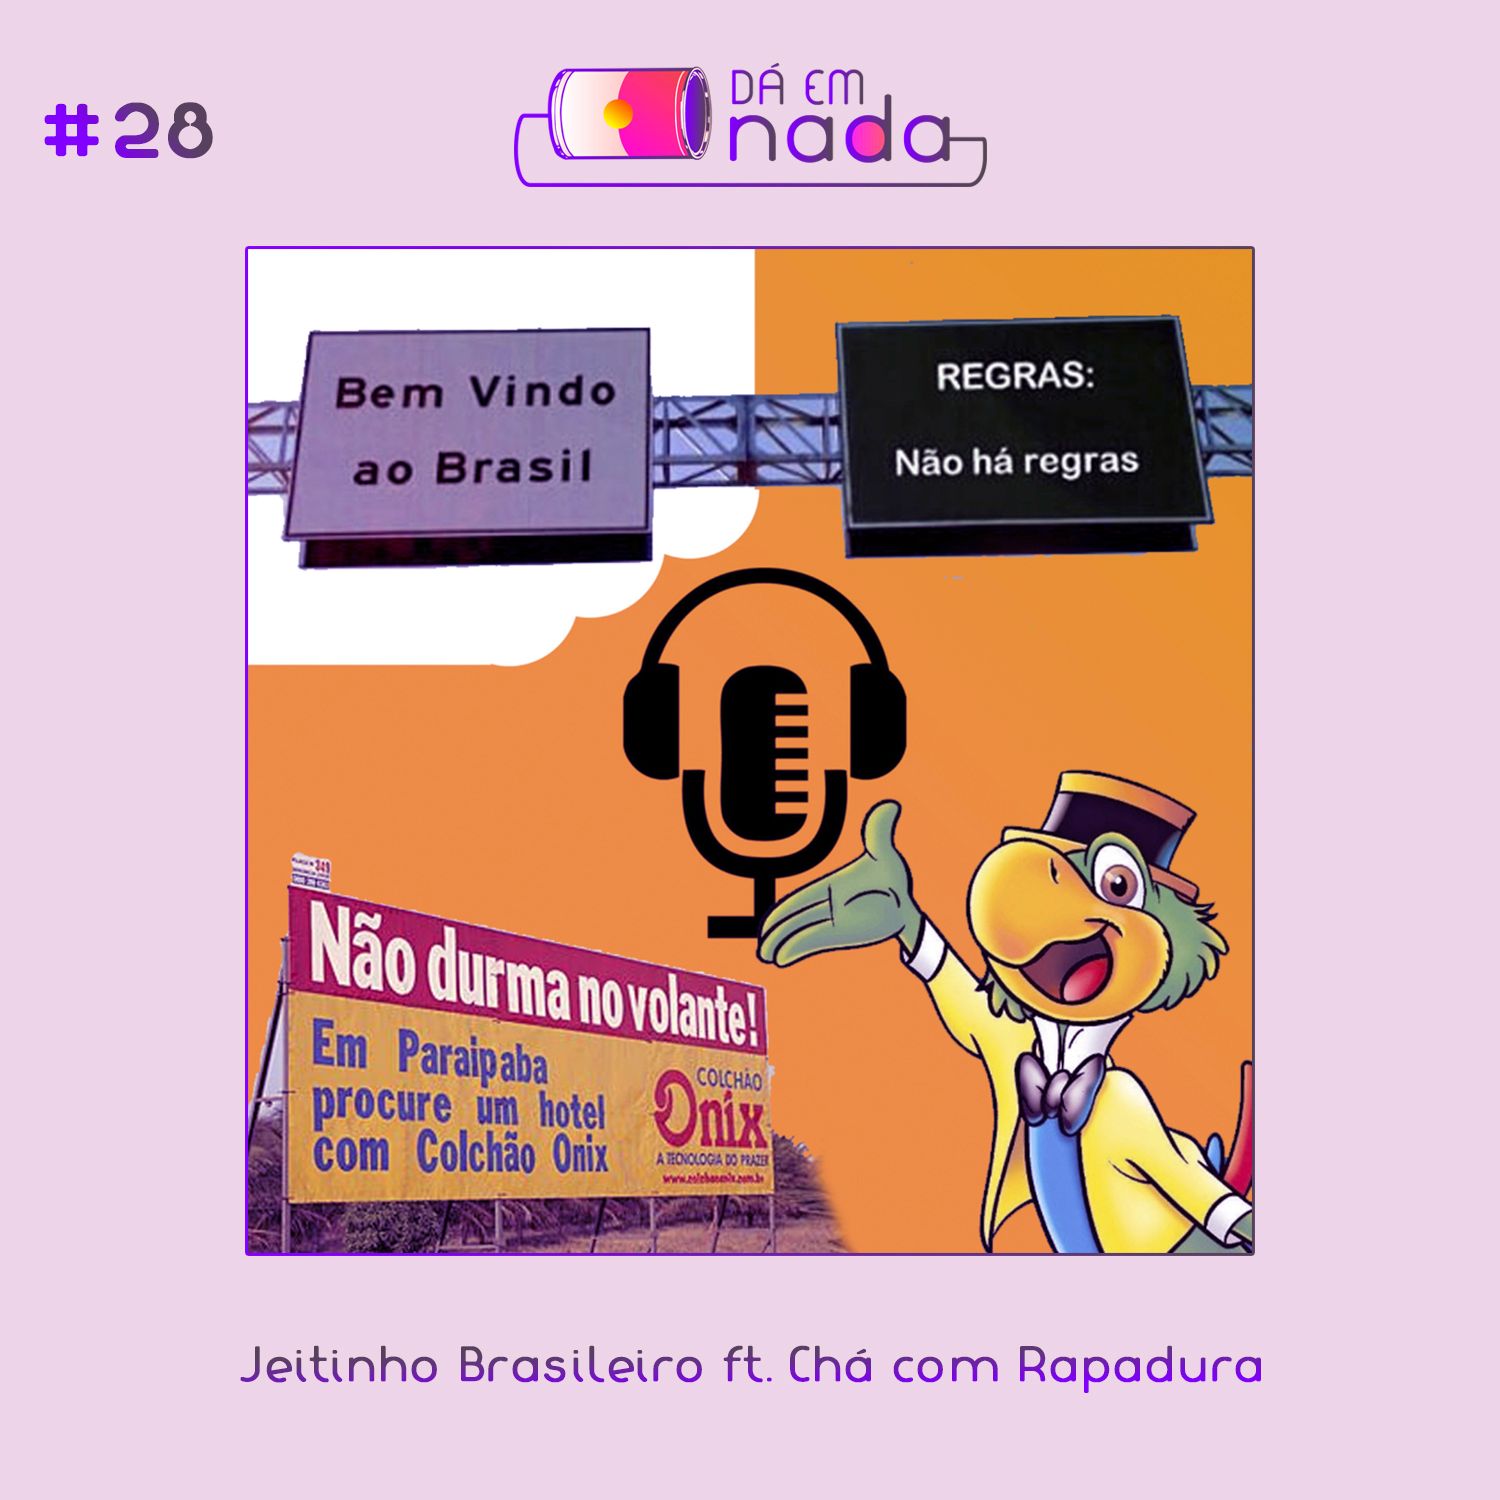 #28 - Jeitinho Braisleiro ft. Chá com Rapadura